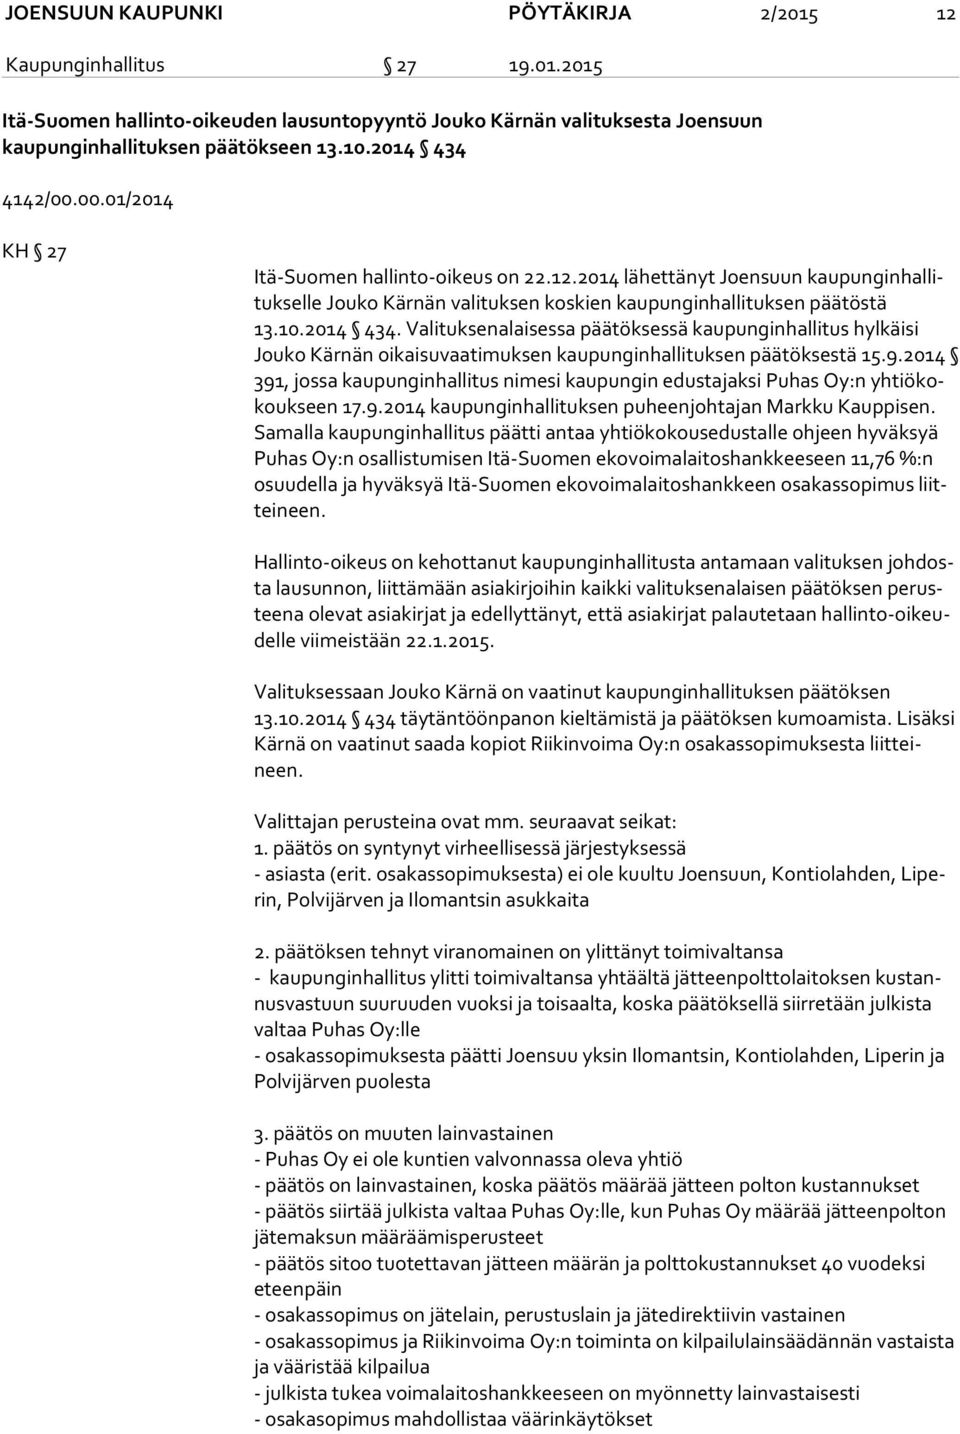 2014 434. Valituksenalaisessa päätöksessä kaupunginhallitus hylkäisi Jou ko Kärnän oikaisuvaatimuksen kaupunginhallituksen päätöksestä 15.9.